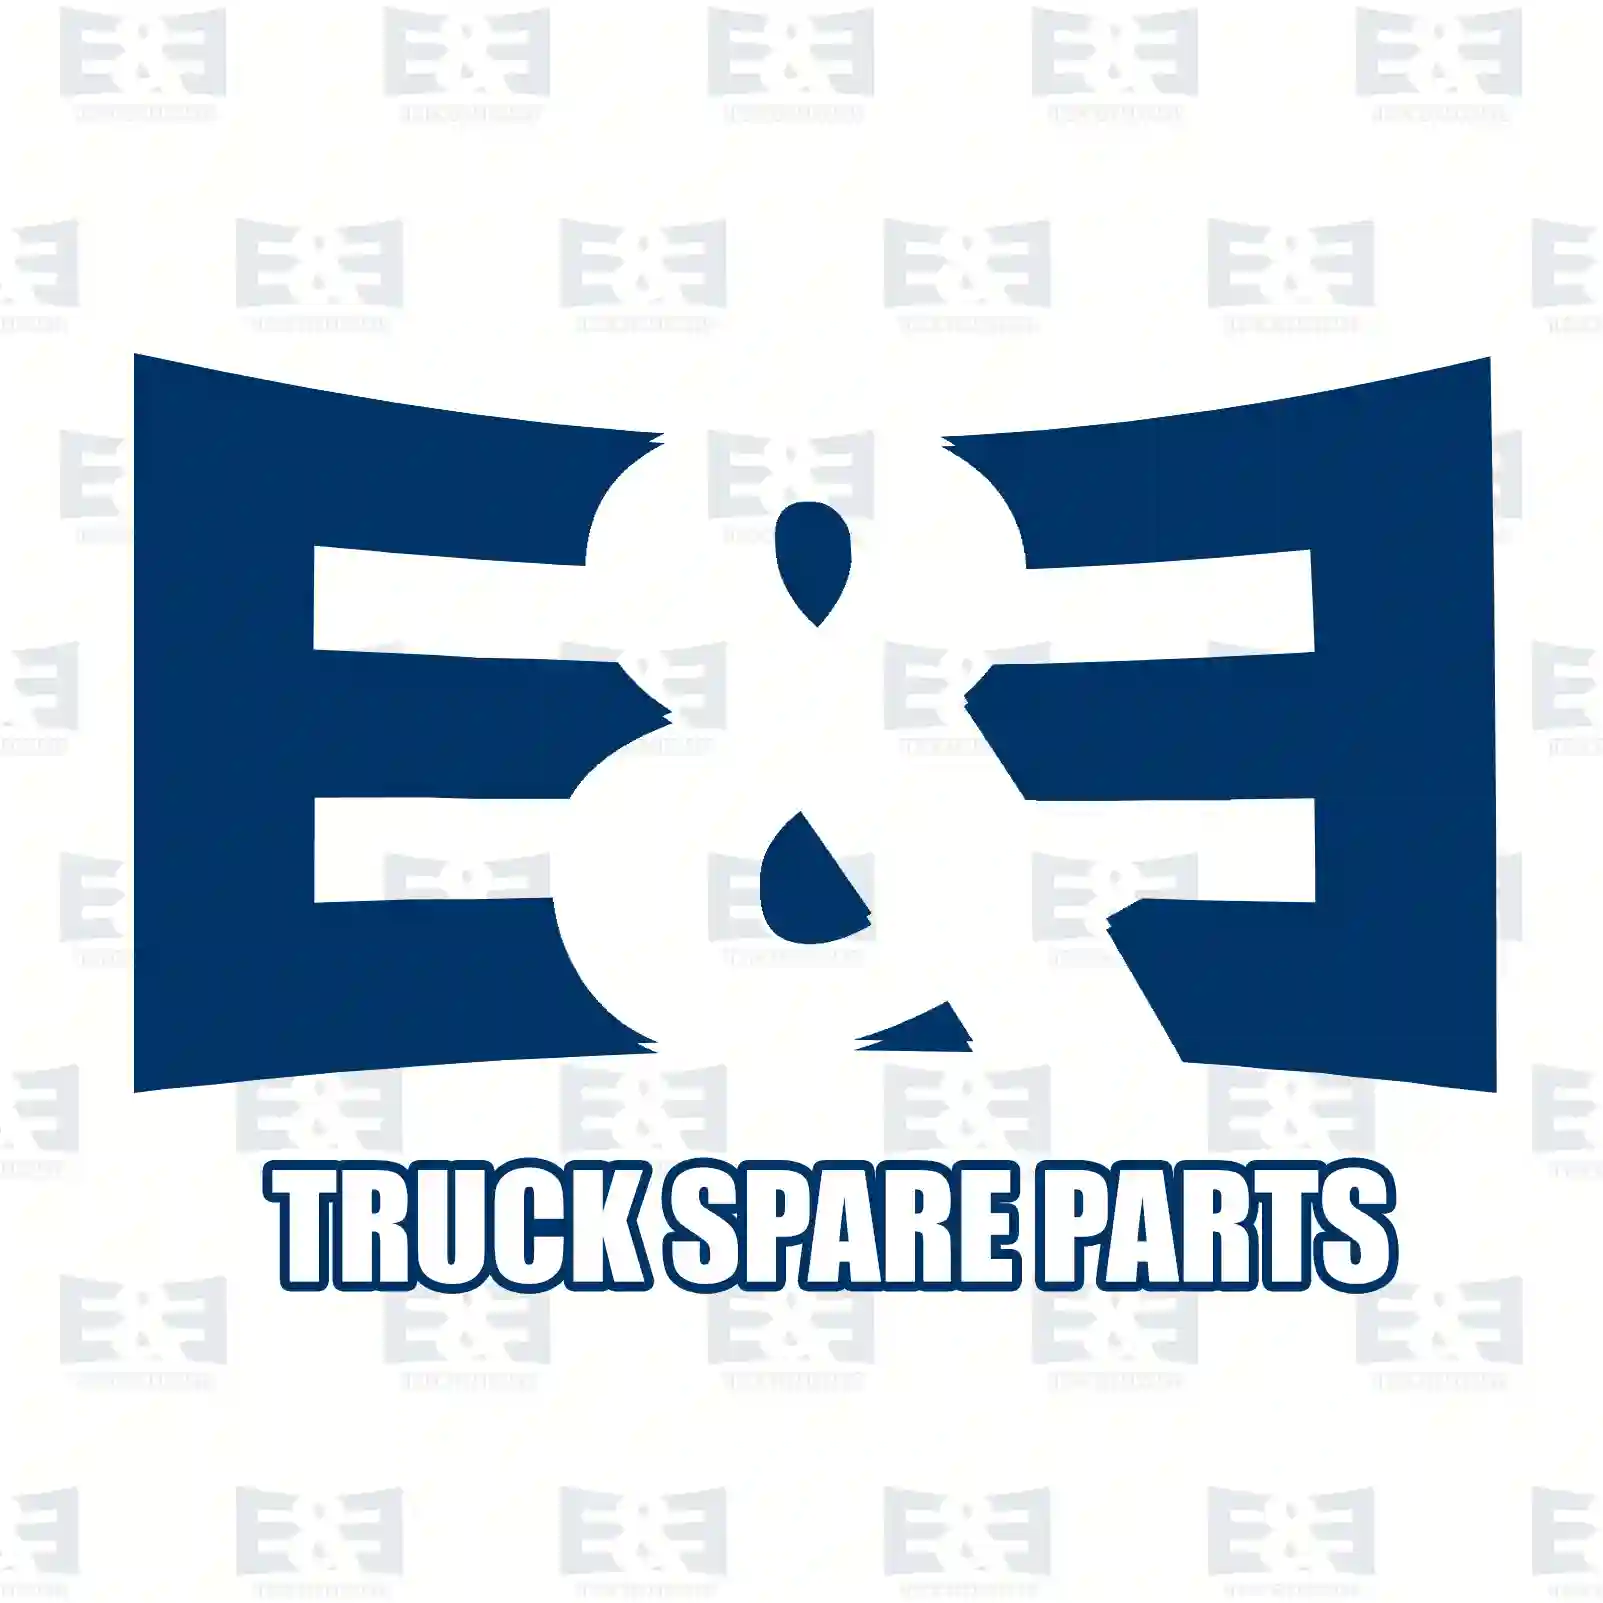 Repair kit, clutch servo, 2E2288301, 1336159, 550455, 550465 ||  2E2288301 E&E Truck Spare Parts | Truck Spare Parts, Auotomotive Spare Parts Repair kit, clutch servo, 2E2288301, 1336159, 550455, 550465 ||  2E2288301 E&E Truck Spare Parts | Truck Spare Parts, Auotomotive Spare Parts